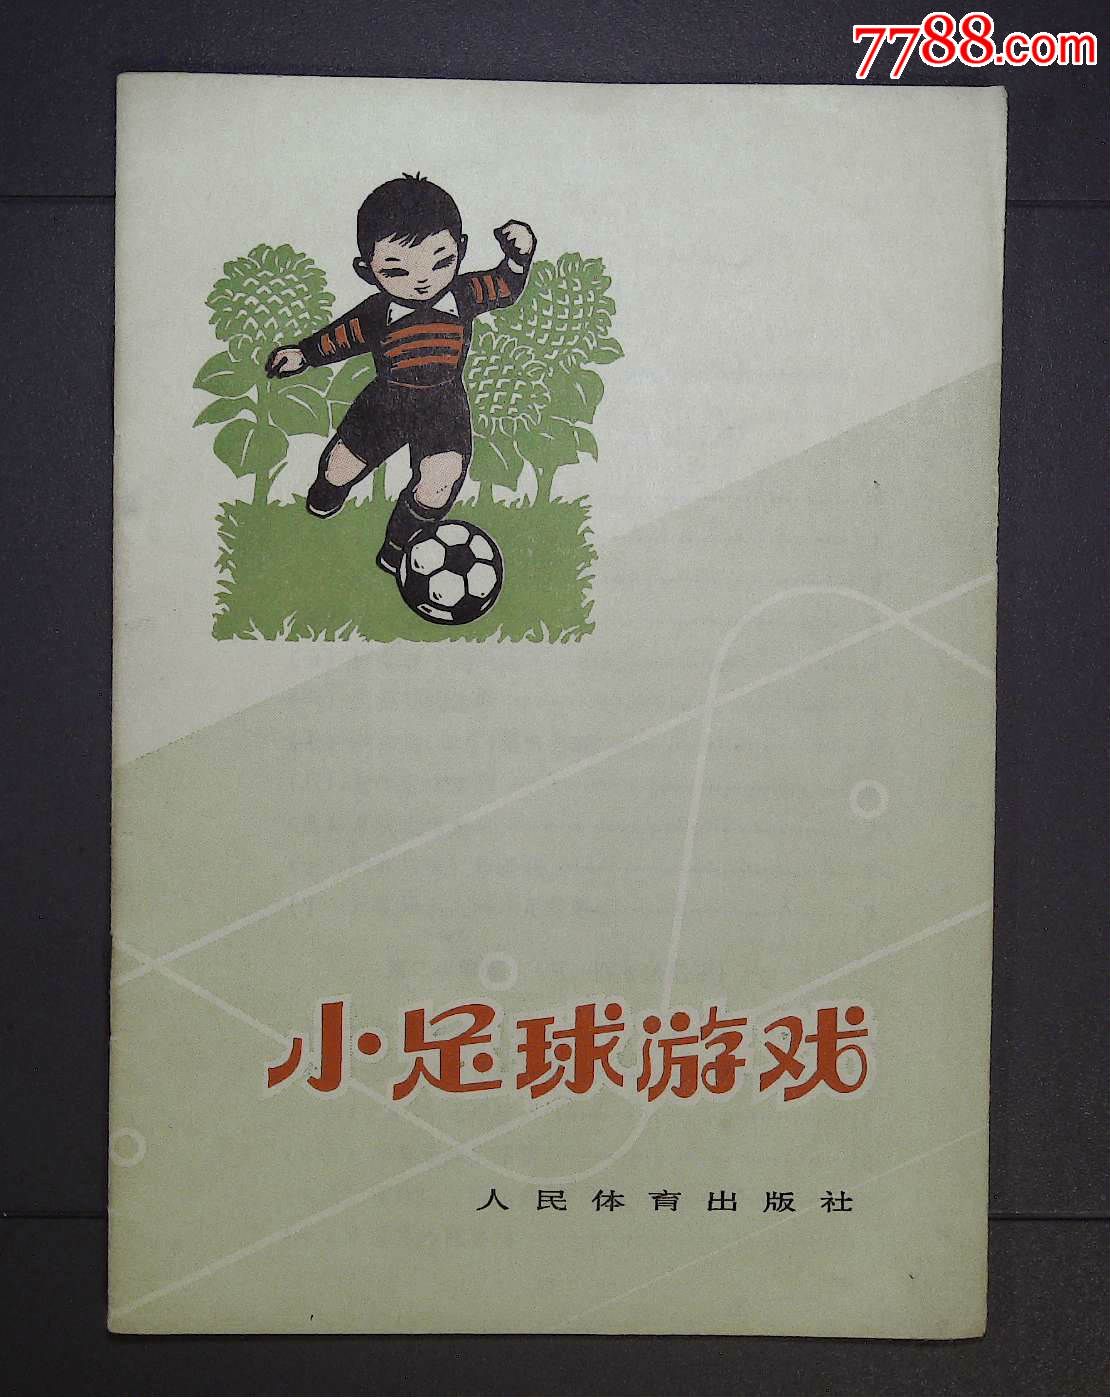 小足球游戏73年2次印刷-价格:3元-se3277653